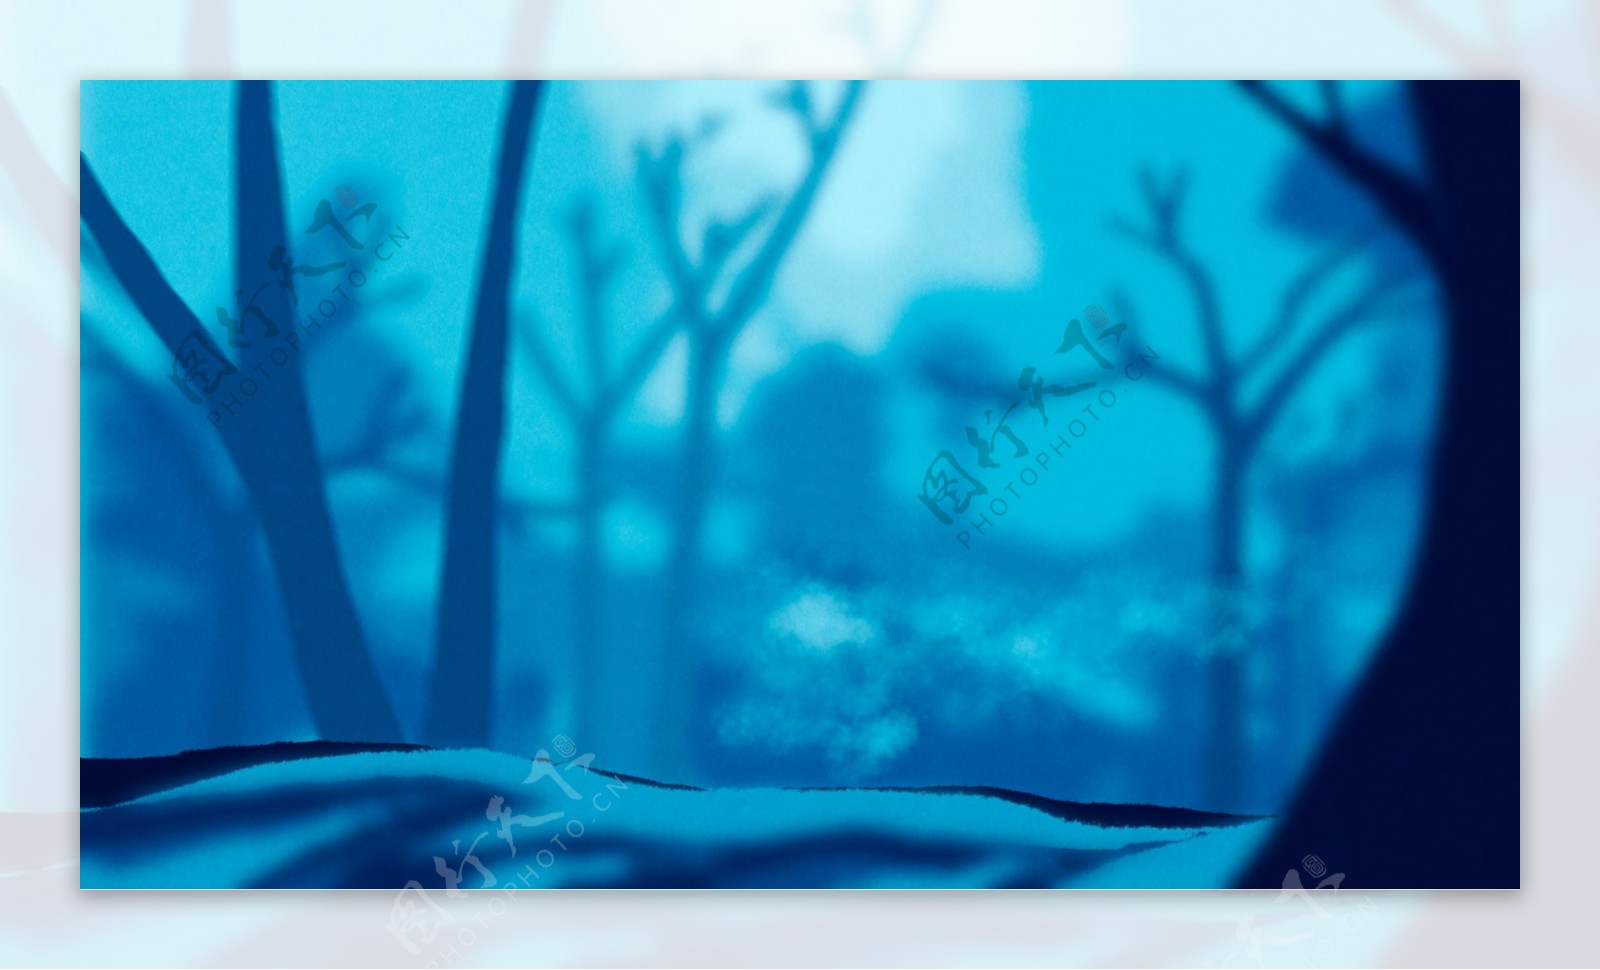 蓝色朦胧树林背景图